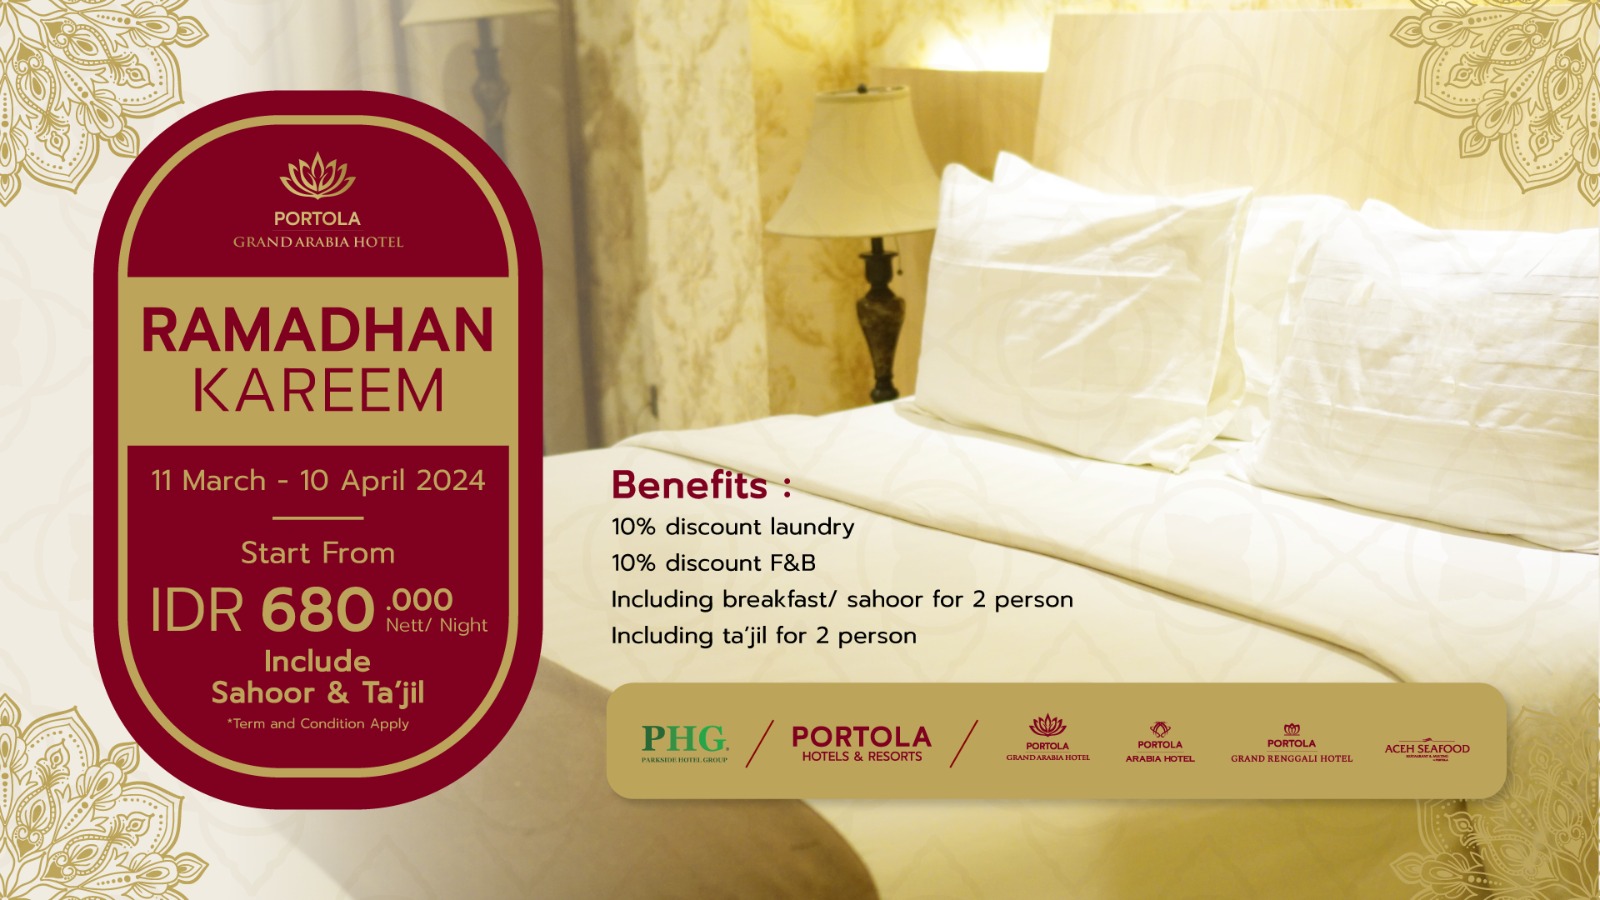 Portola Grand Arabia Hotel: Segera Nikmati Promo Spesial "Ramadhan Kareem"!